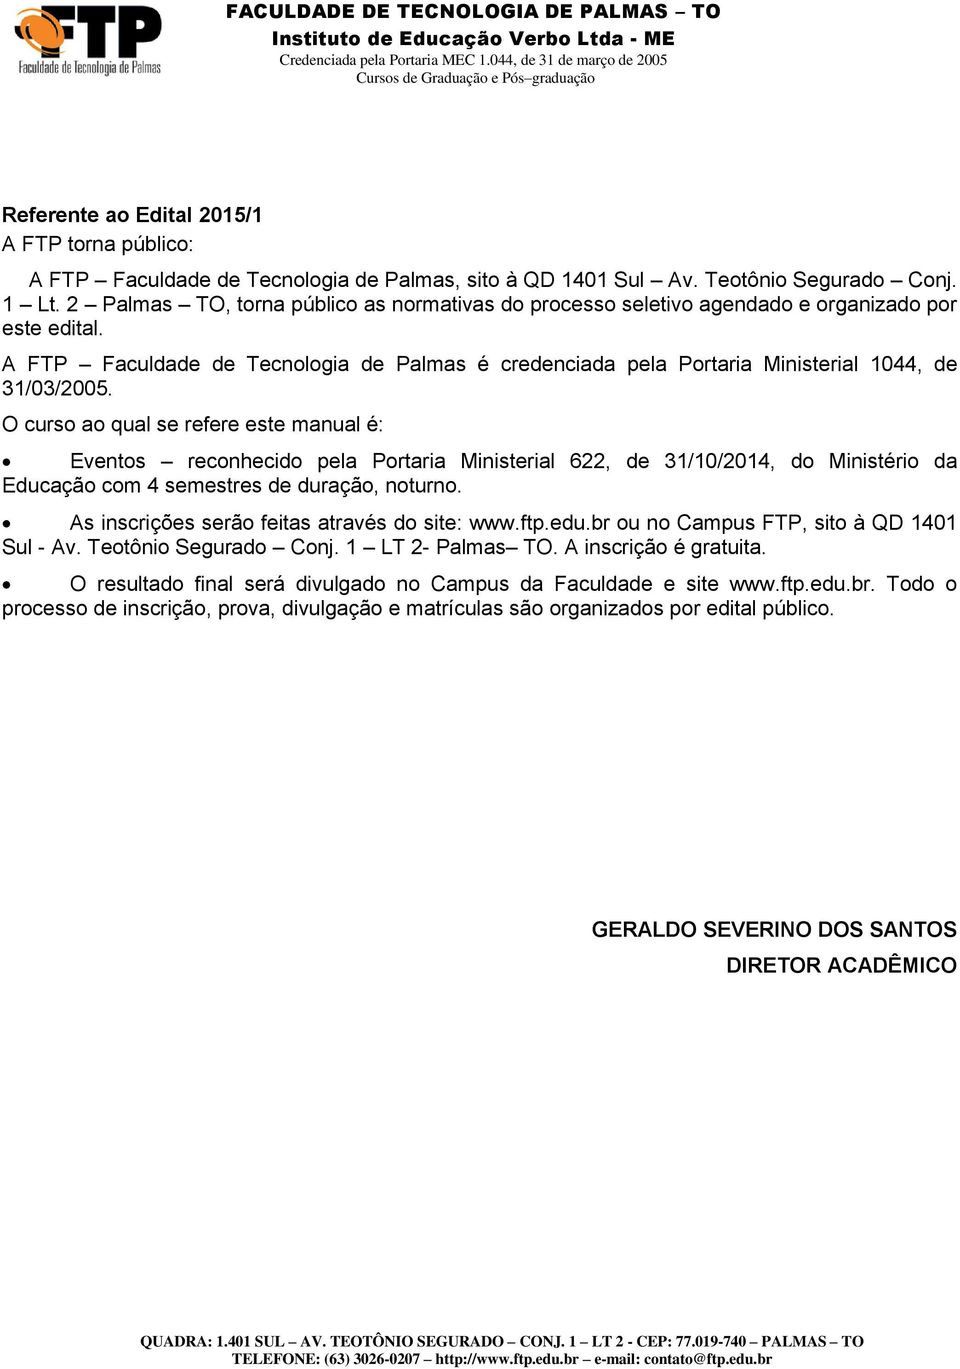 A FTP Faculdade de Tecnologia de Palmas é credenciada pela Portaria Ministerial 1044, de 31/03/2005.